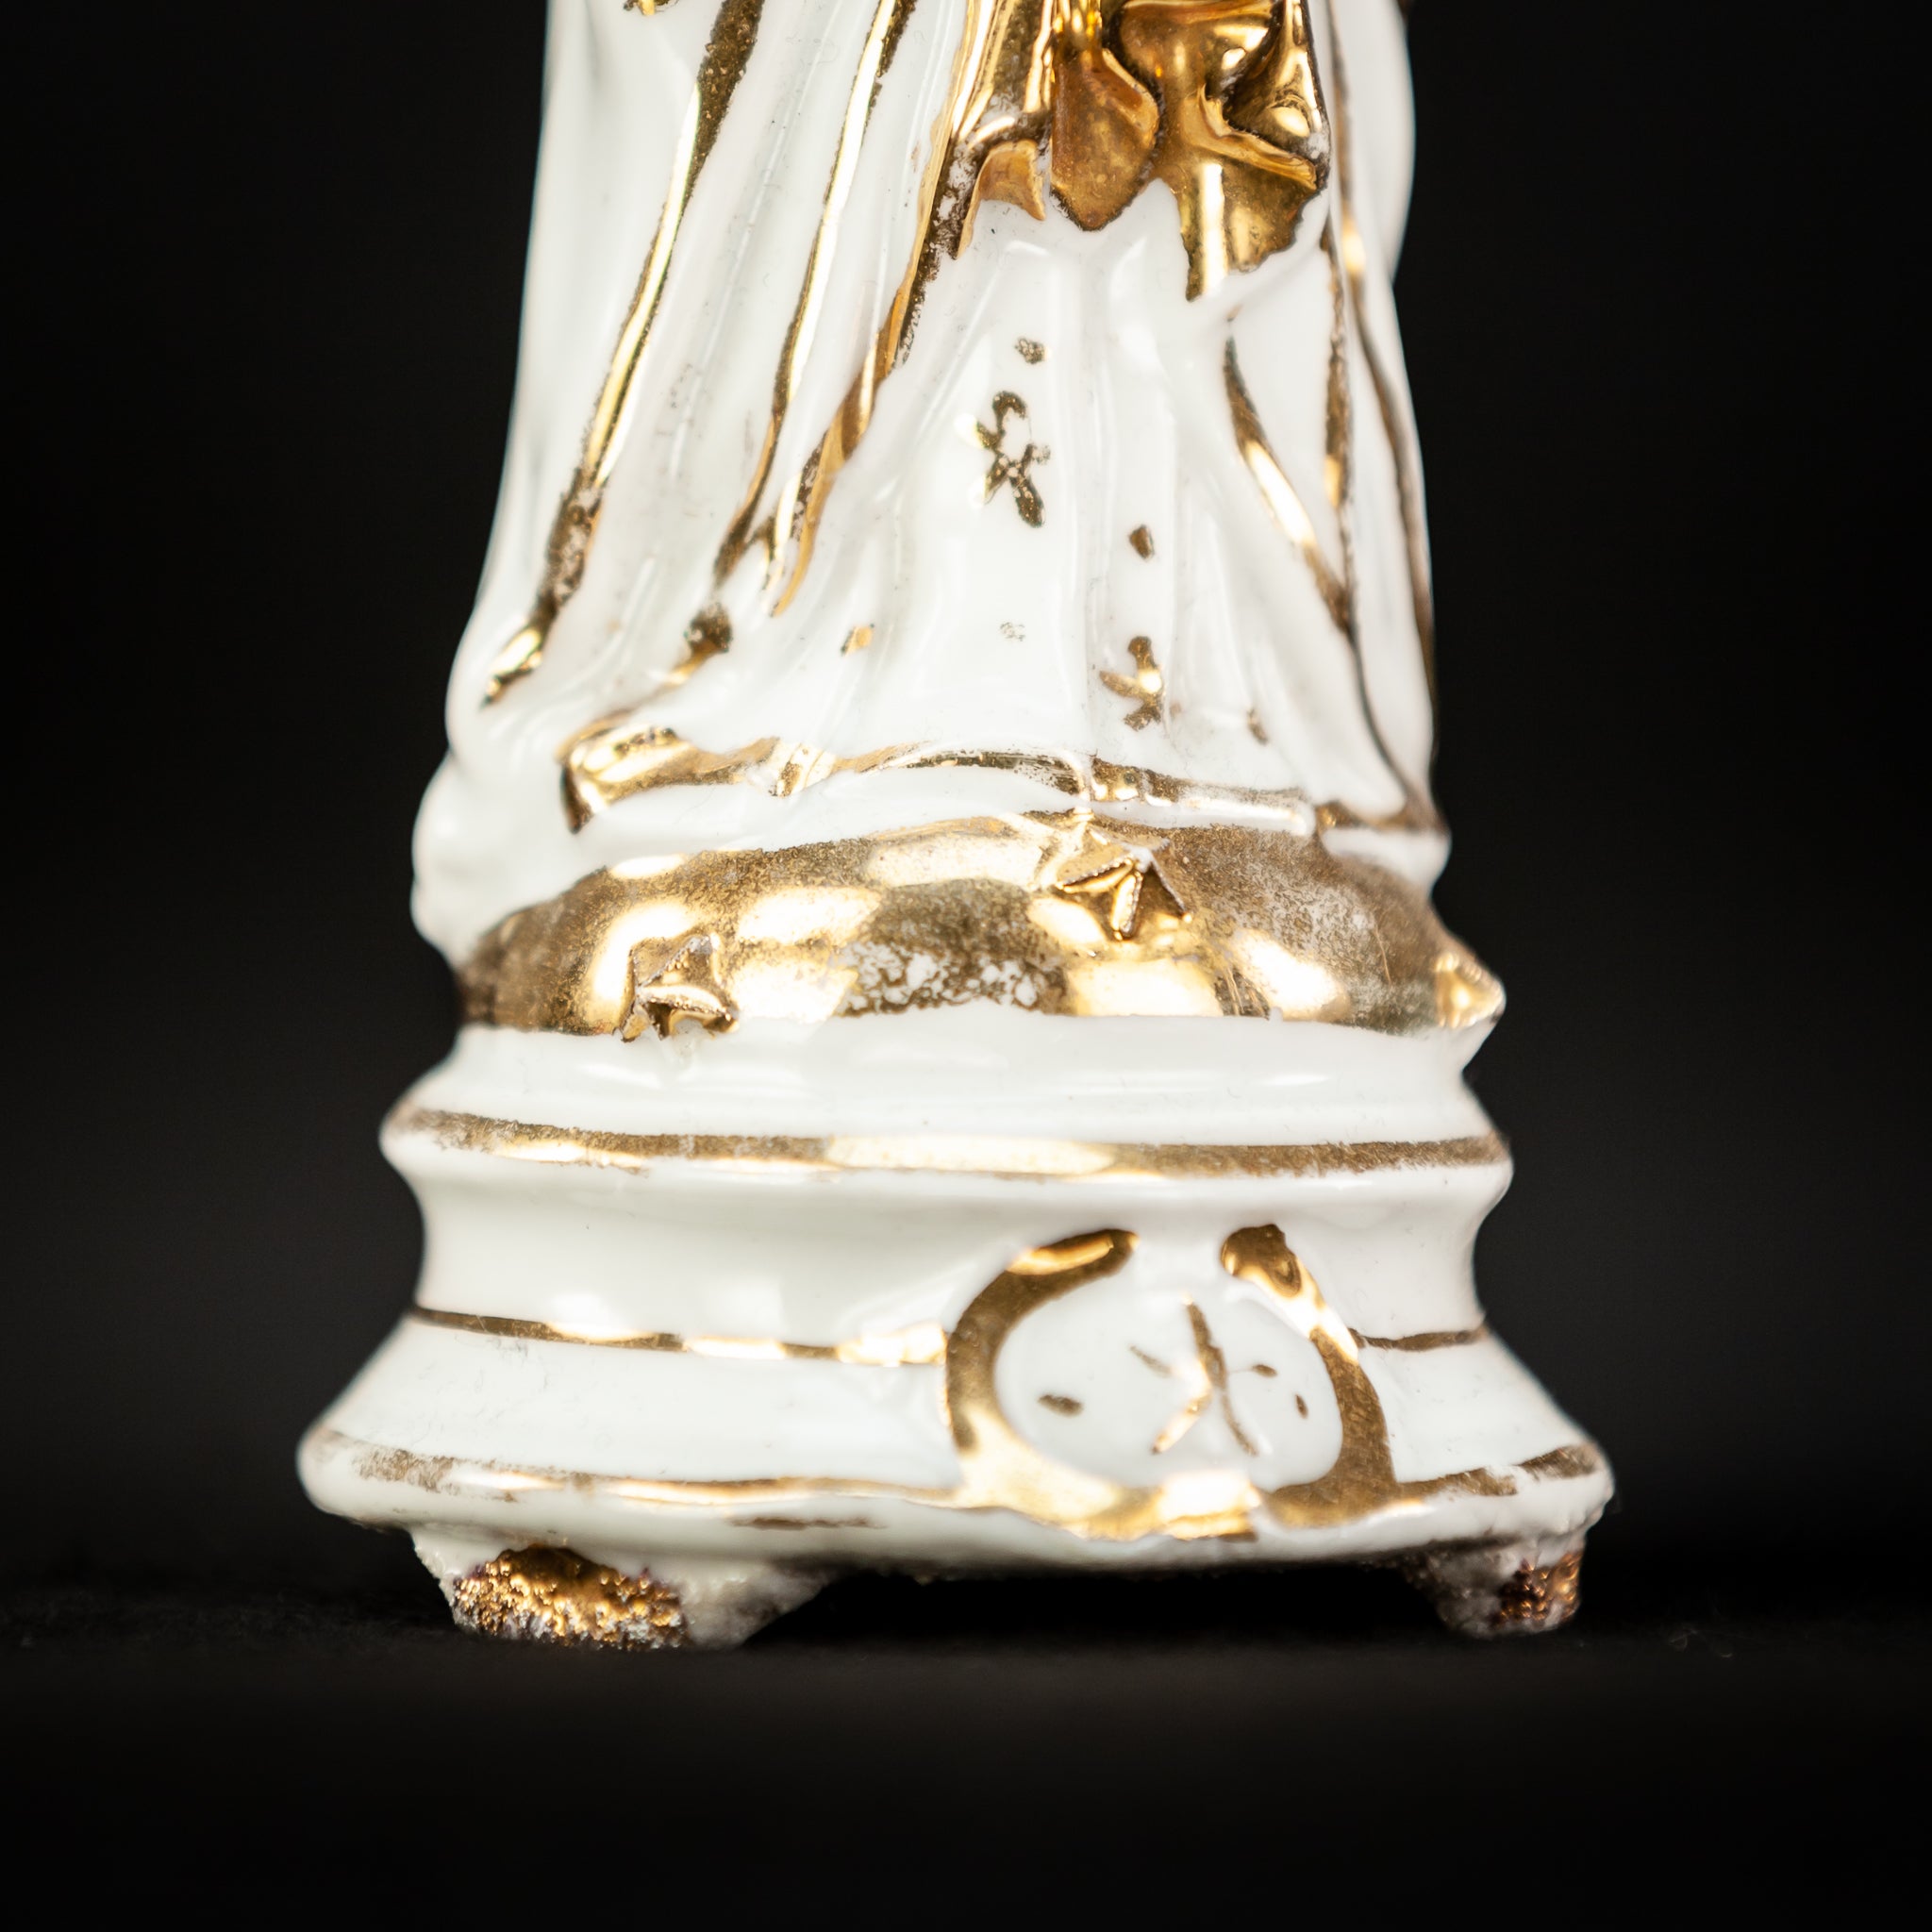 Virgin Mary Child Christ | Vieux Paris Porcelain